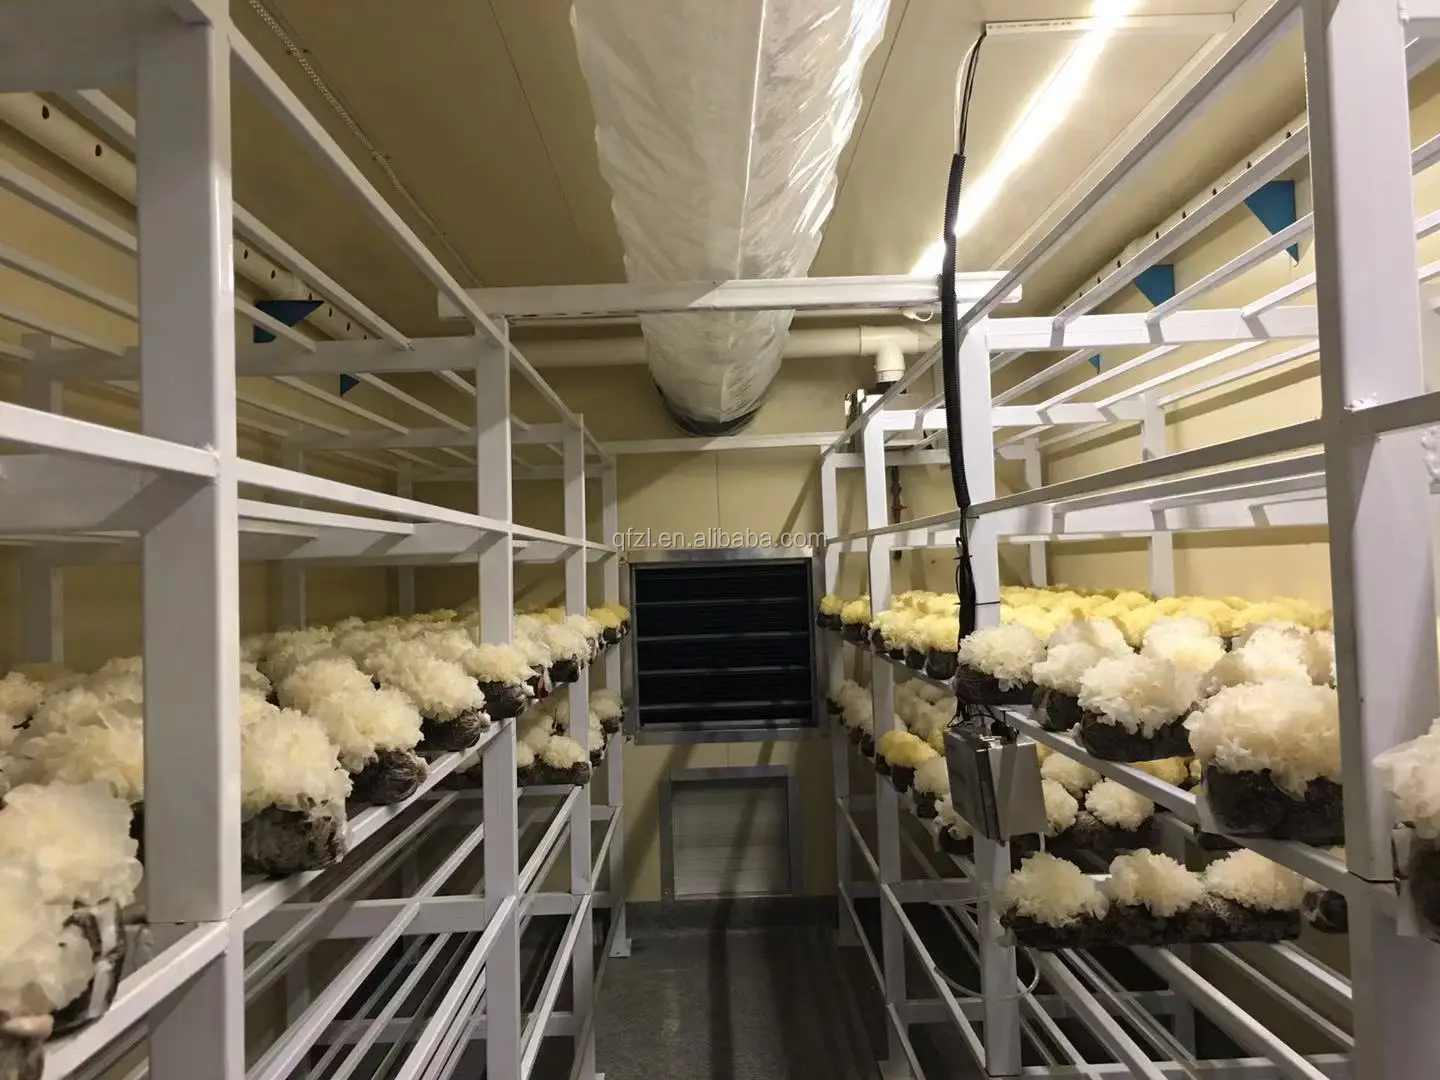 casing a mushroom incubator